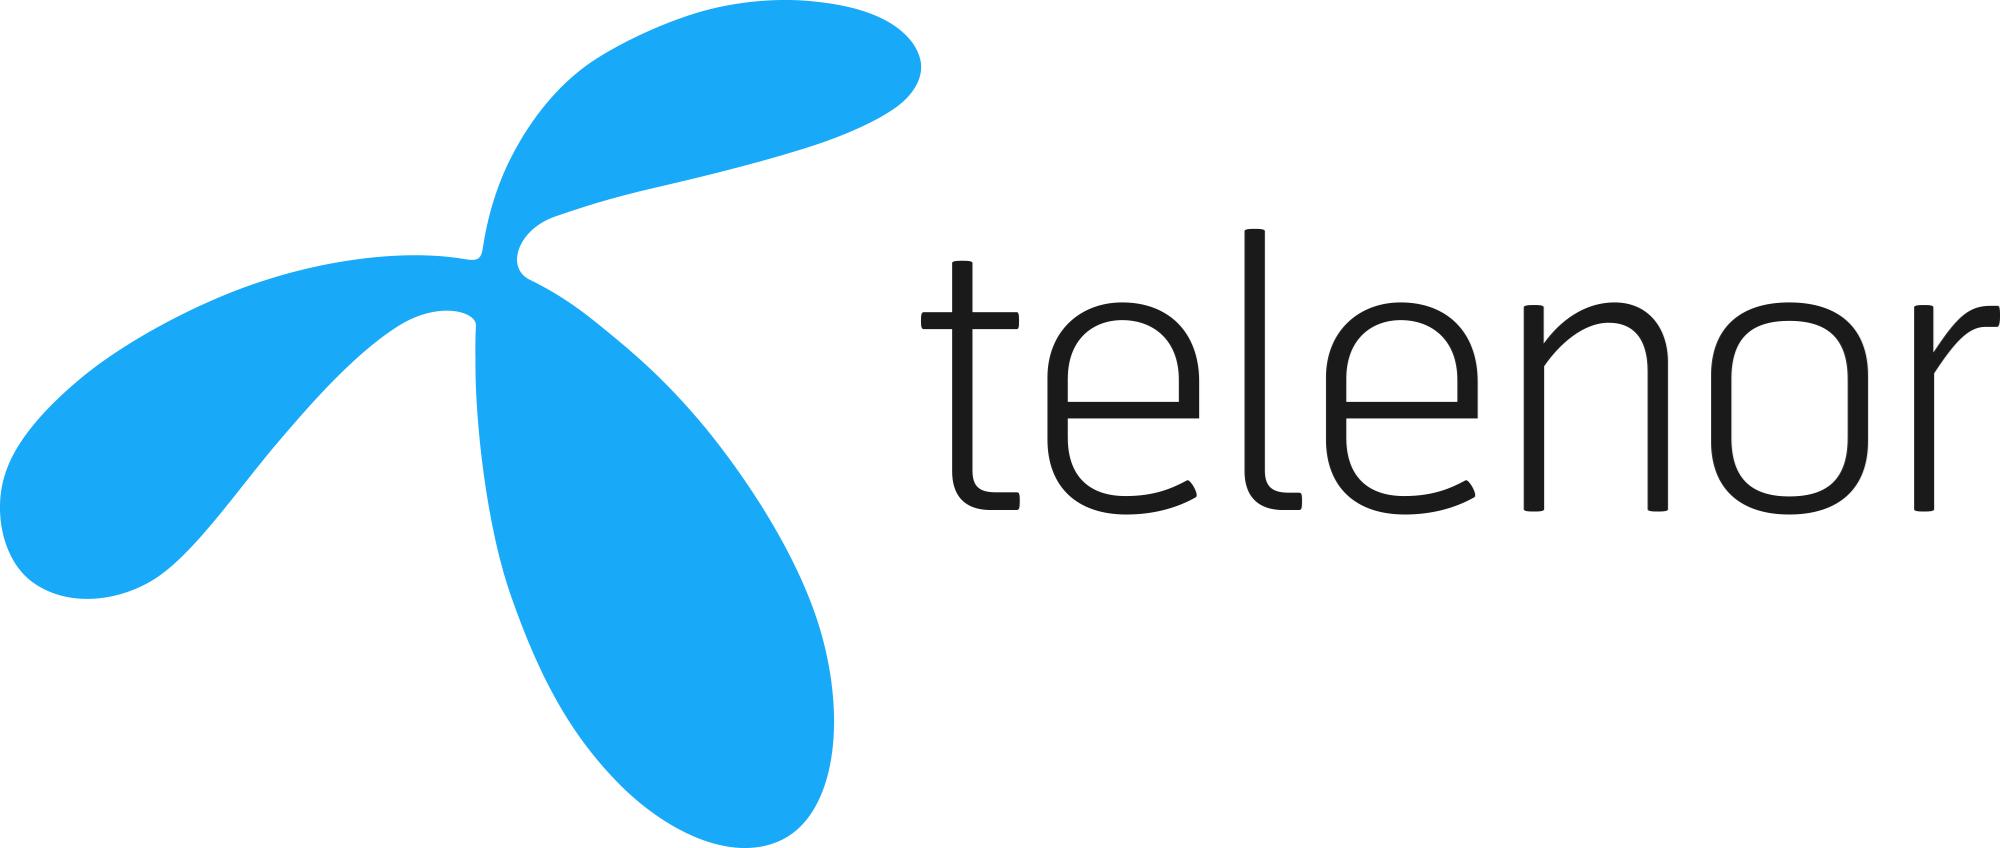 Logo of Telenor